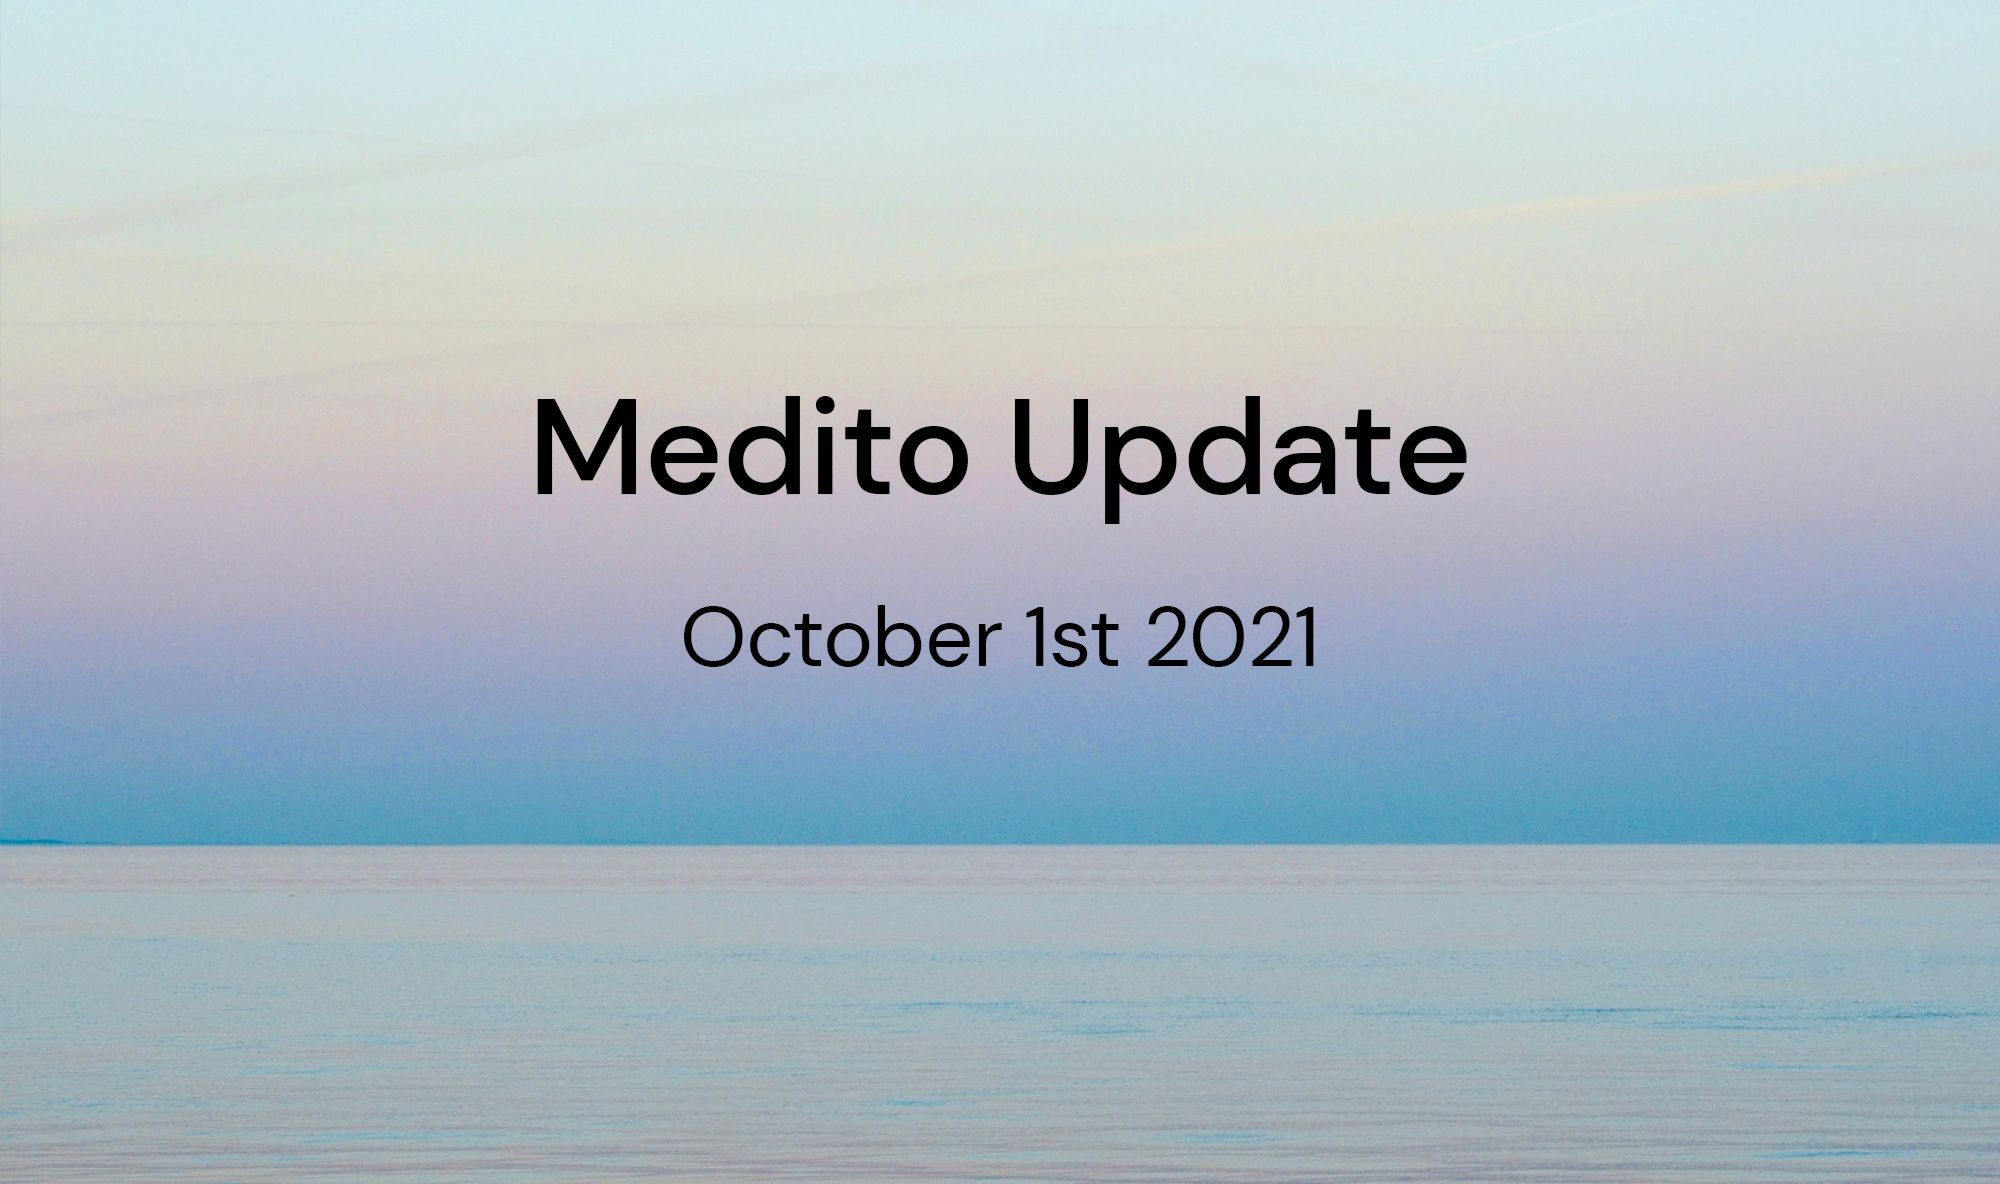 Medito Update - October 1st 2021